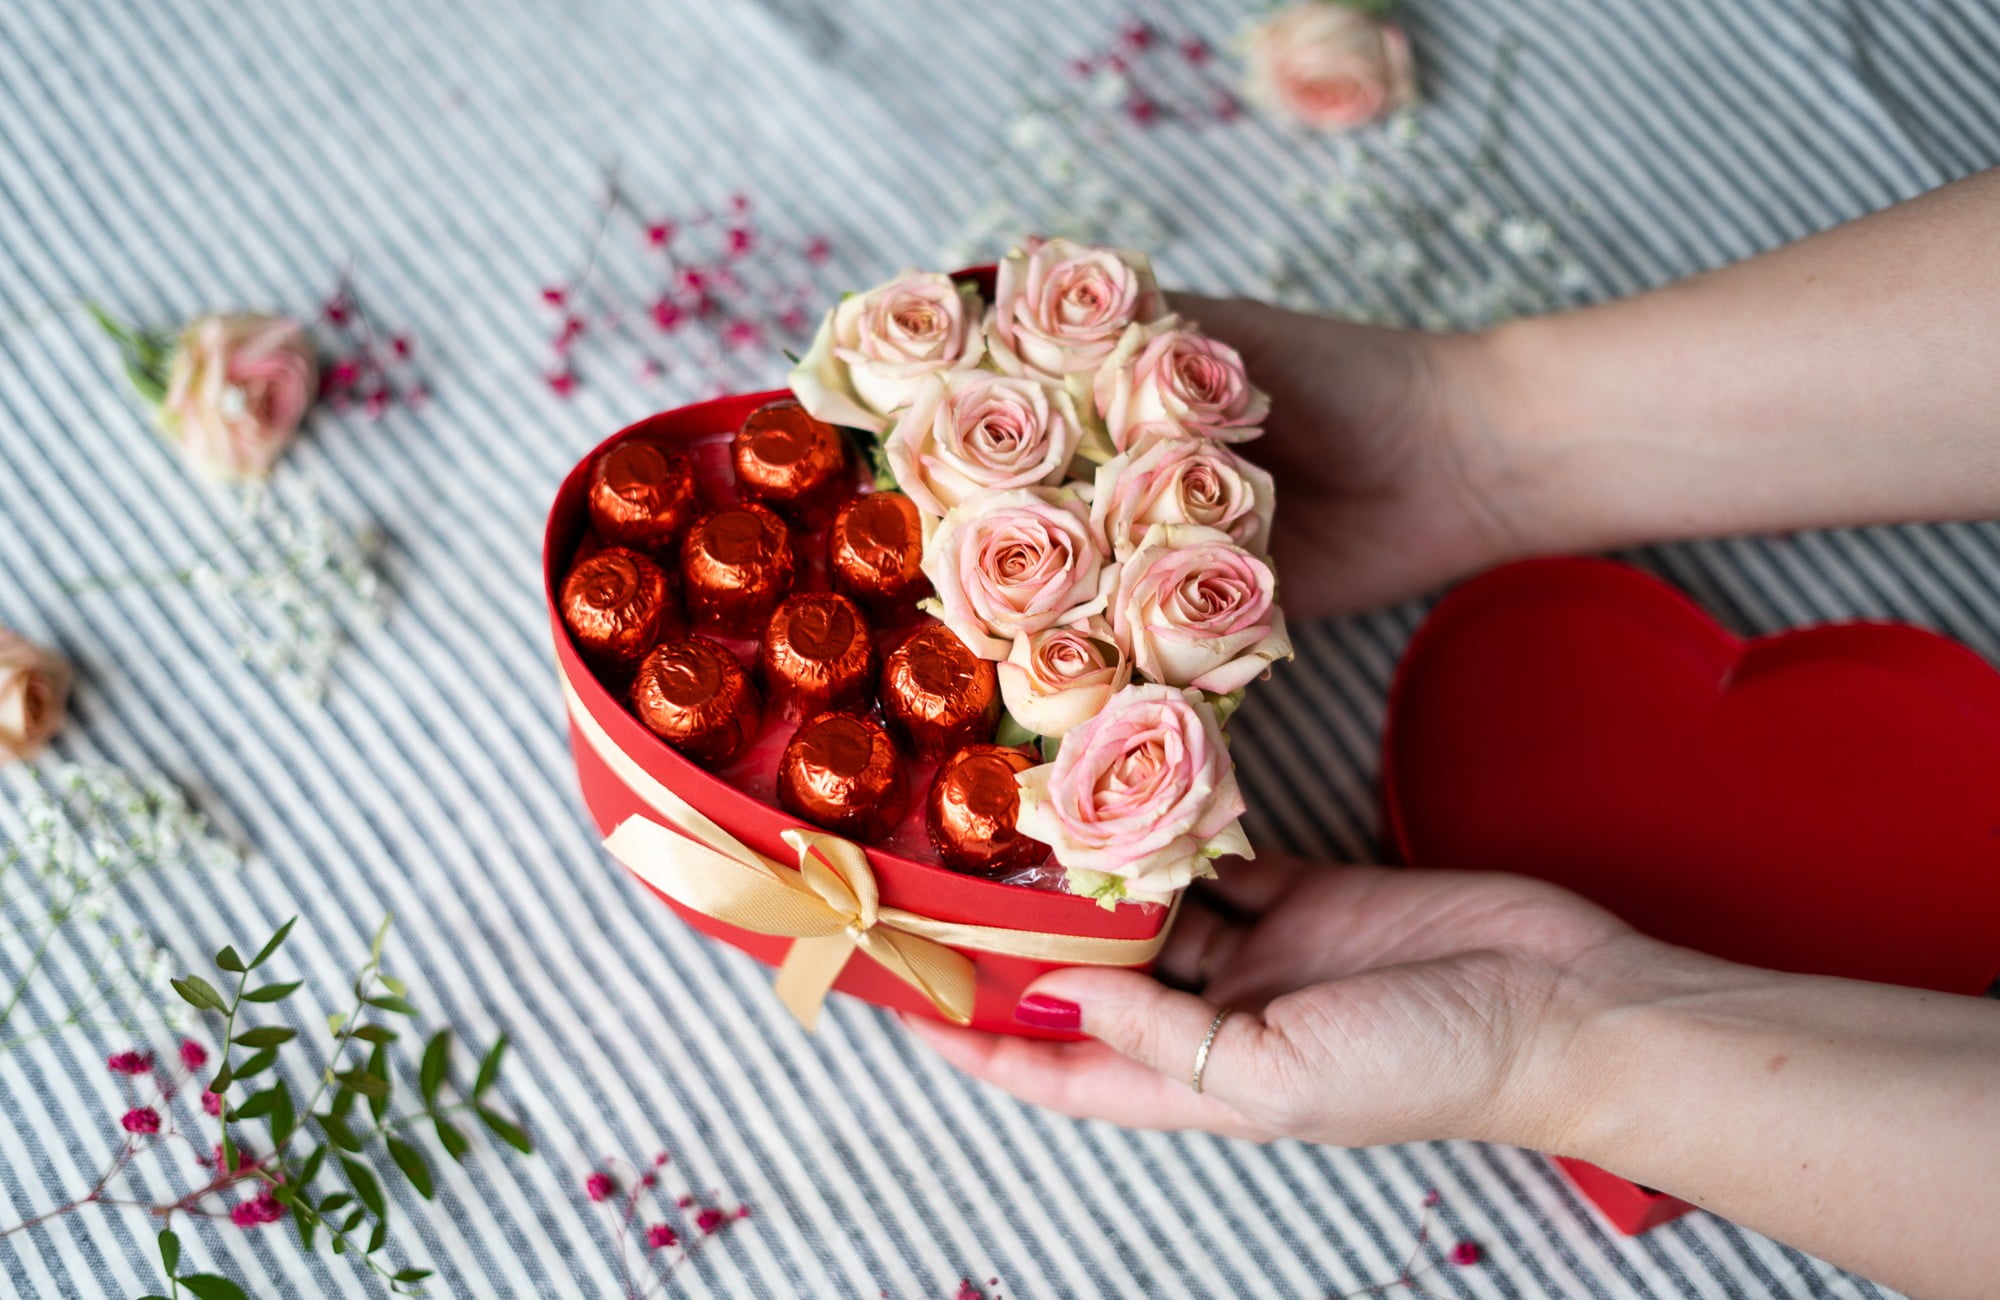 Čokoladice i cvijeće zajedno u obliku srca - originalan poklon za mamu.